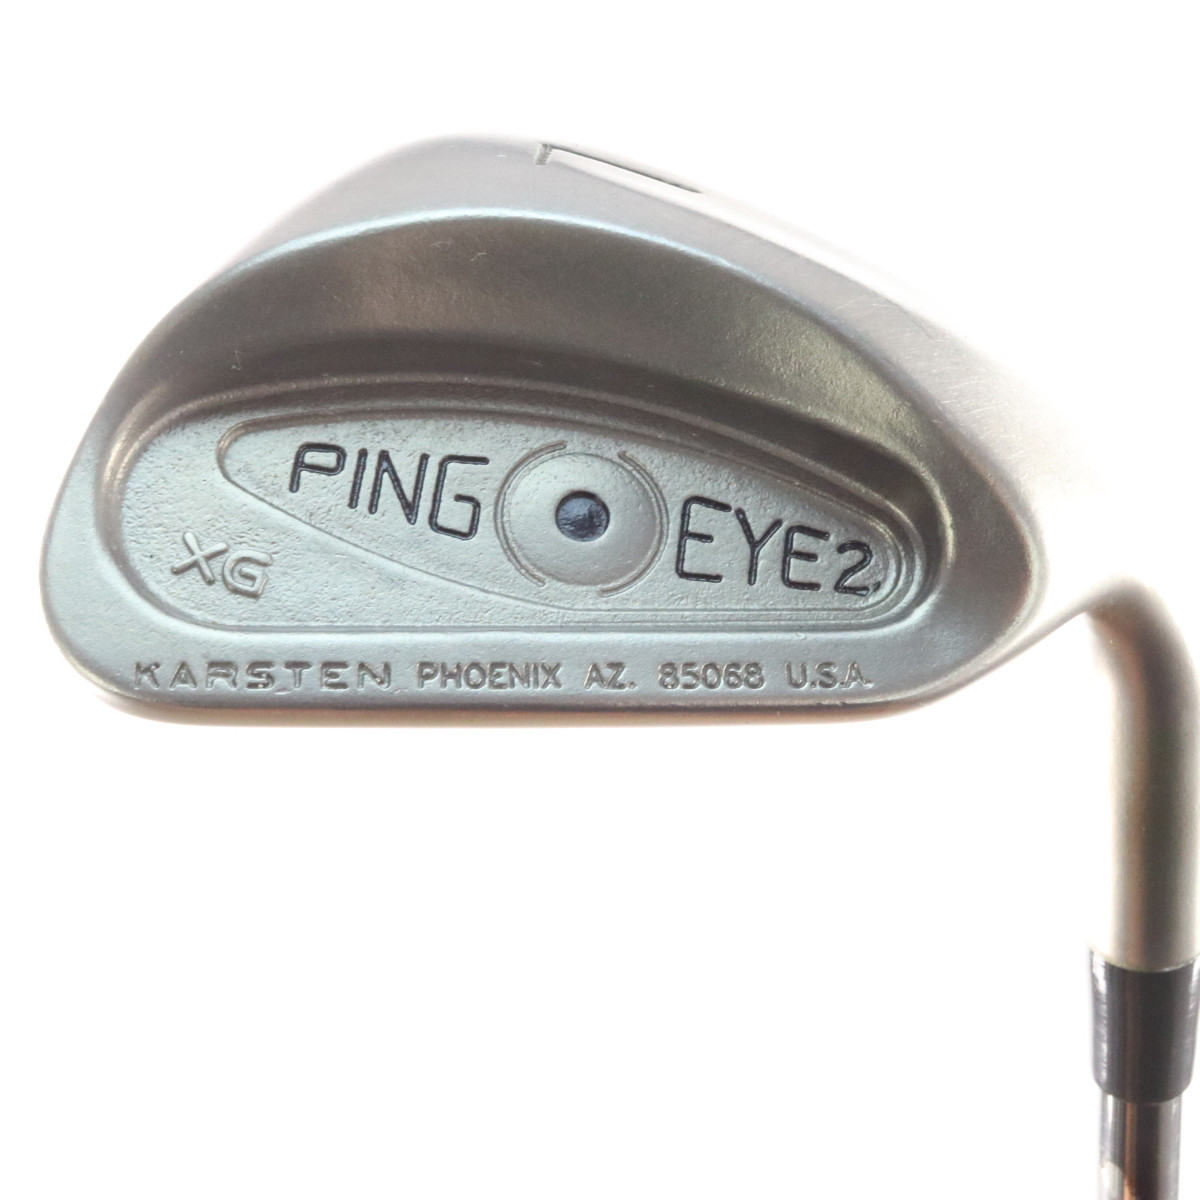 ping eye 2 serial number 85068